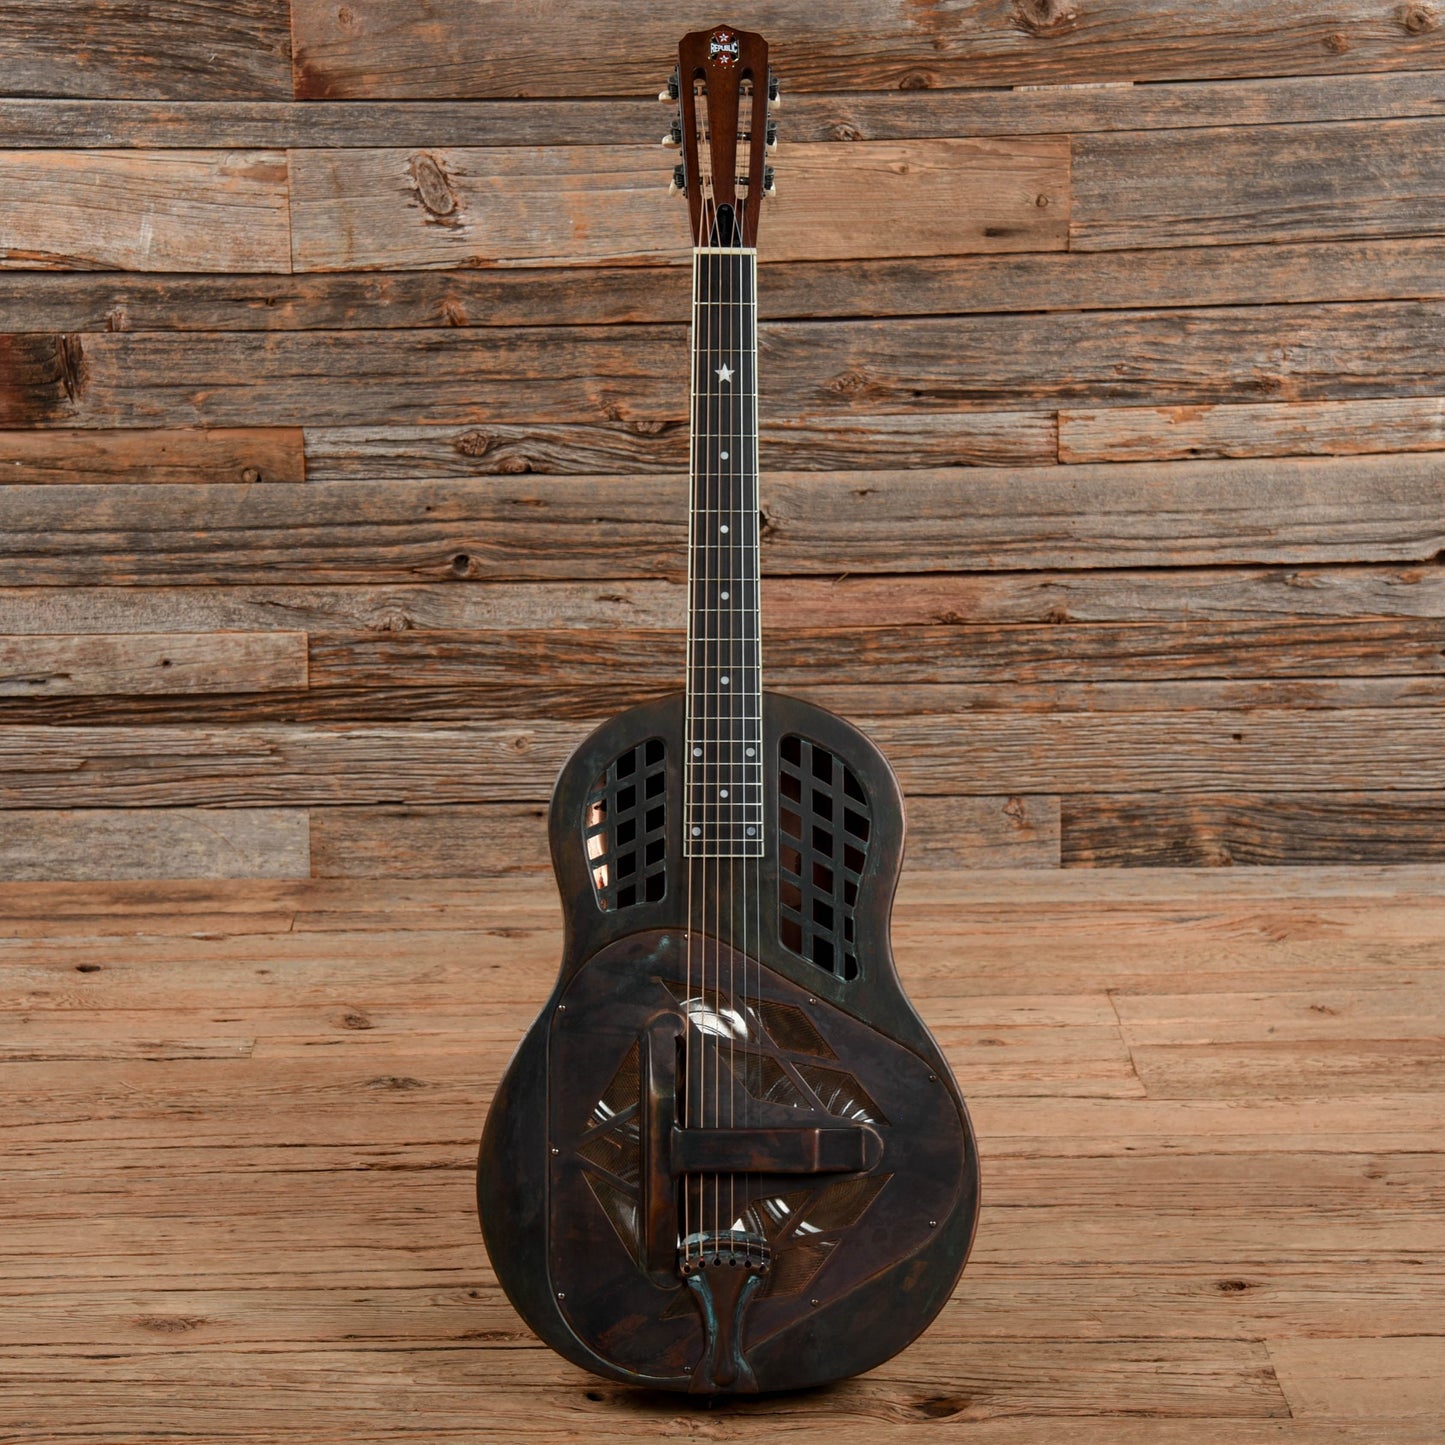 Republic Tri-Cone Resonator Rust Acoustic Guitars / Resonator